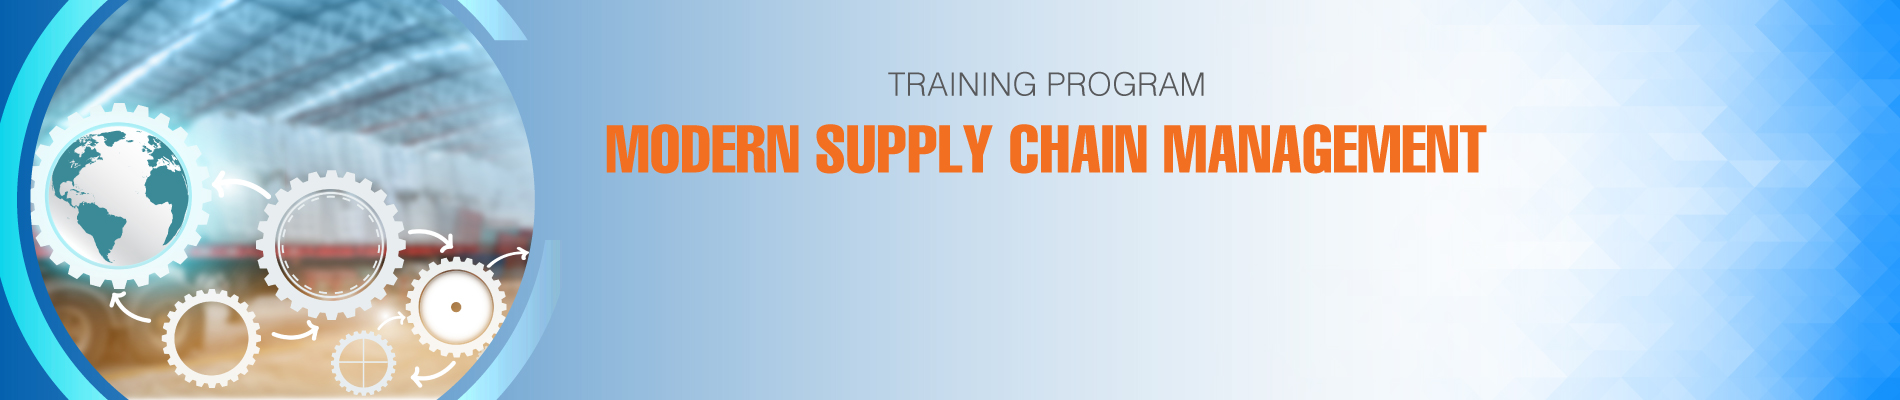 Modern Supply Chain Management